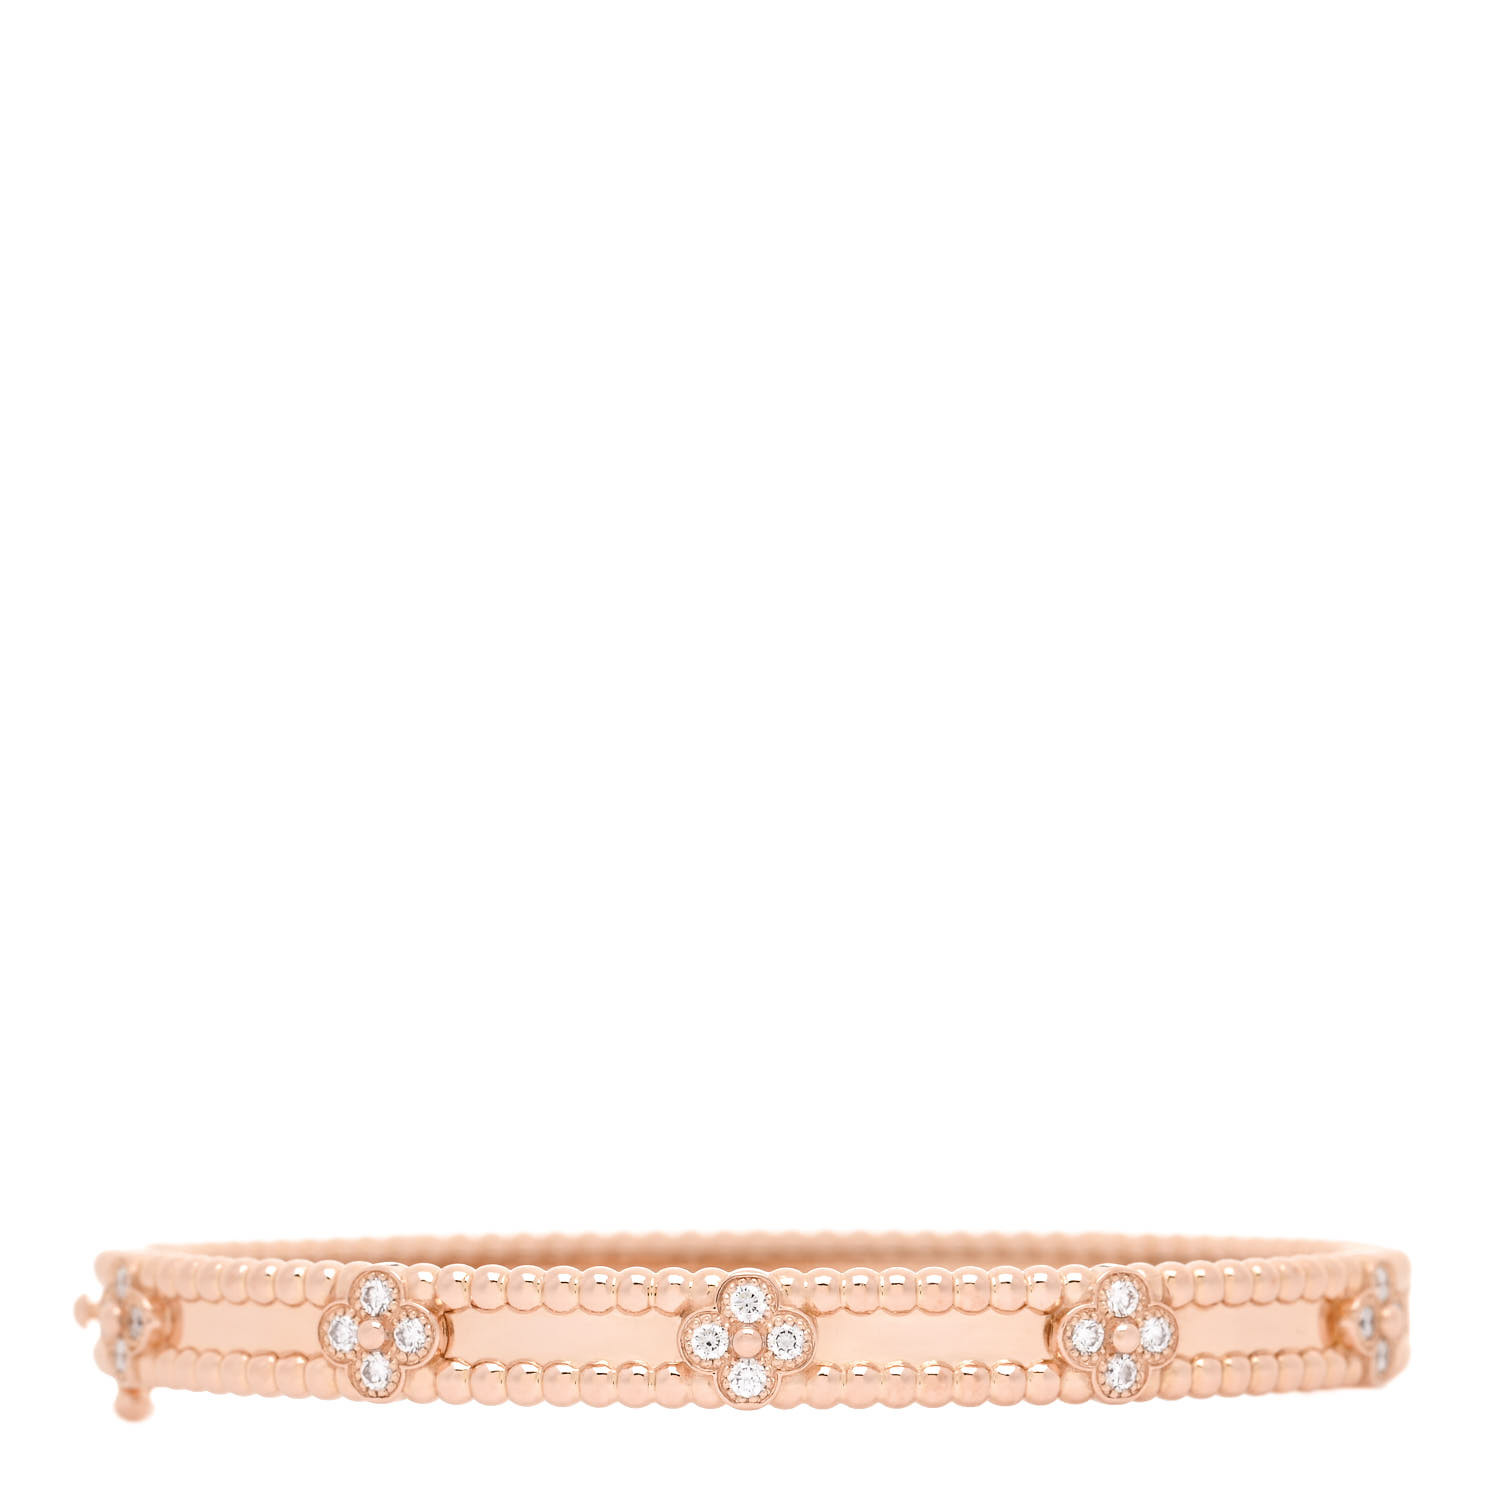 VAN CLEEF & ARPELS 18K Rose Gold Diamond Perlee Sweet Clovers Bracelet by FASHIONPHILE